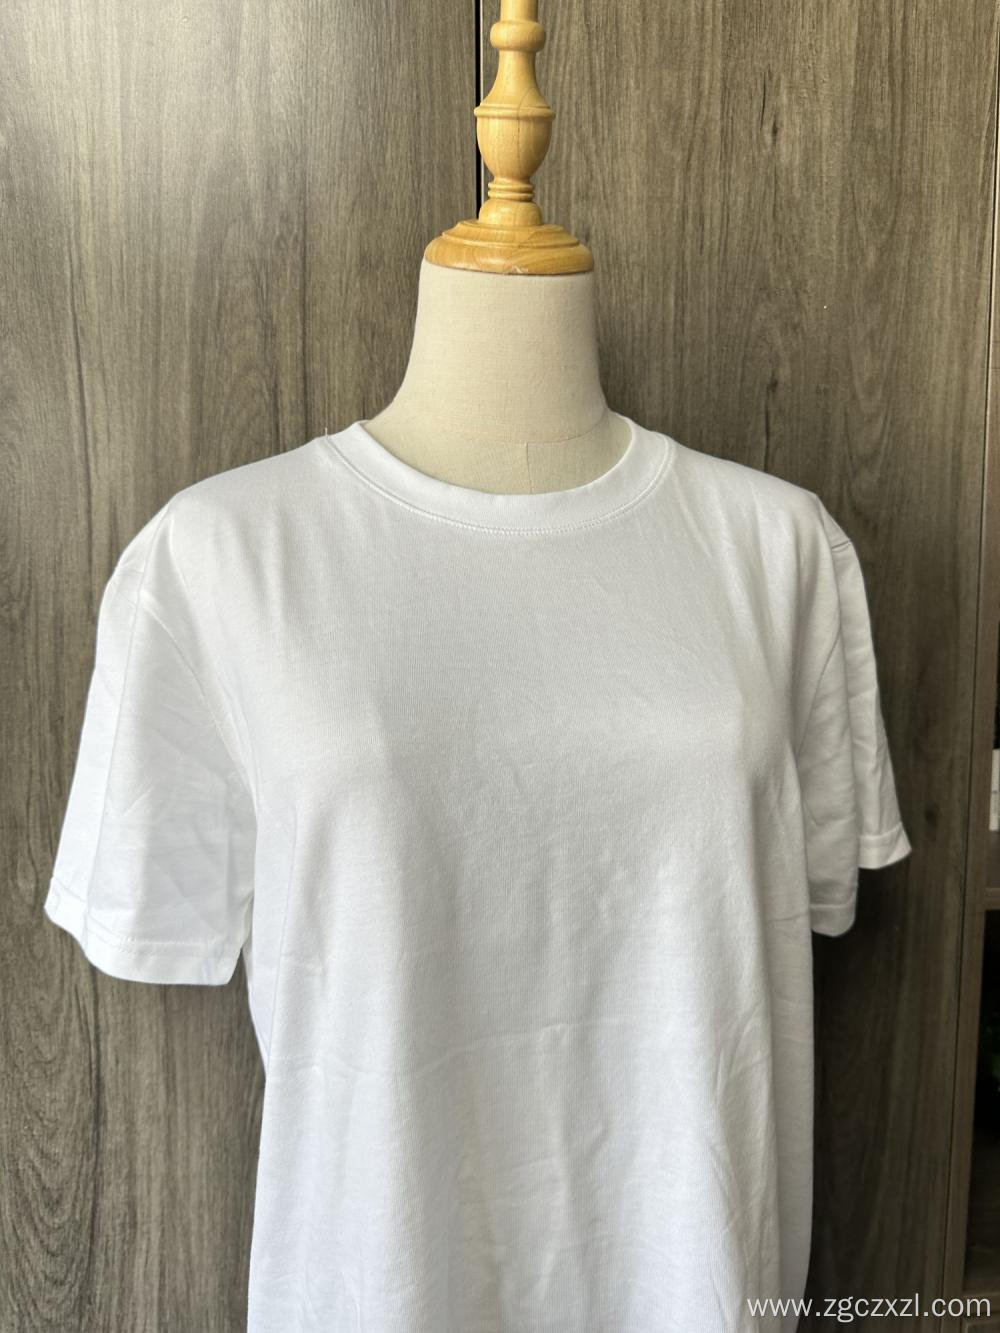 Pure cotton men's solid color round neck t-shirt